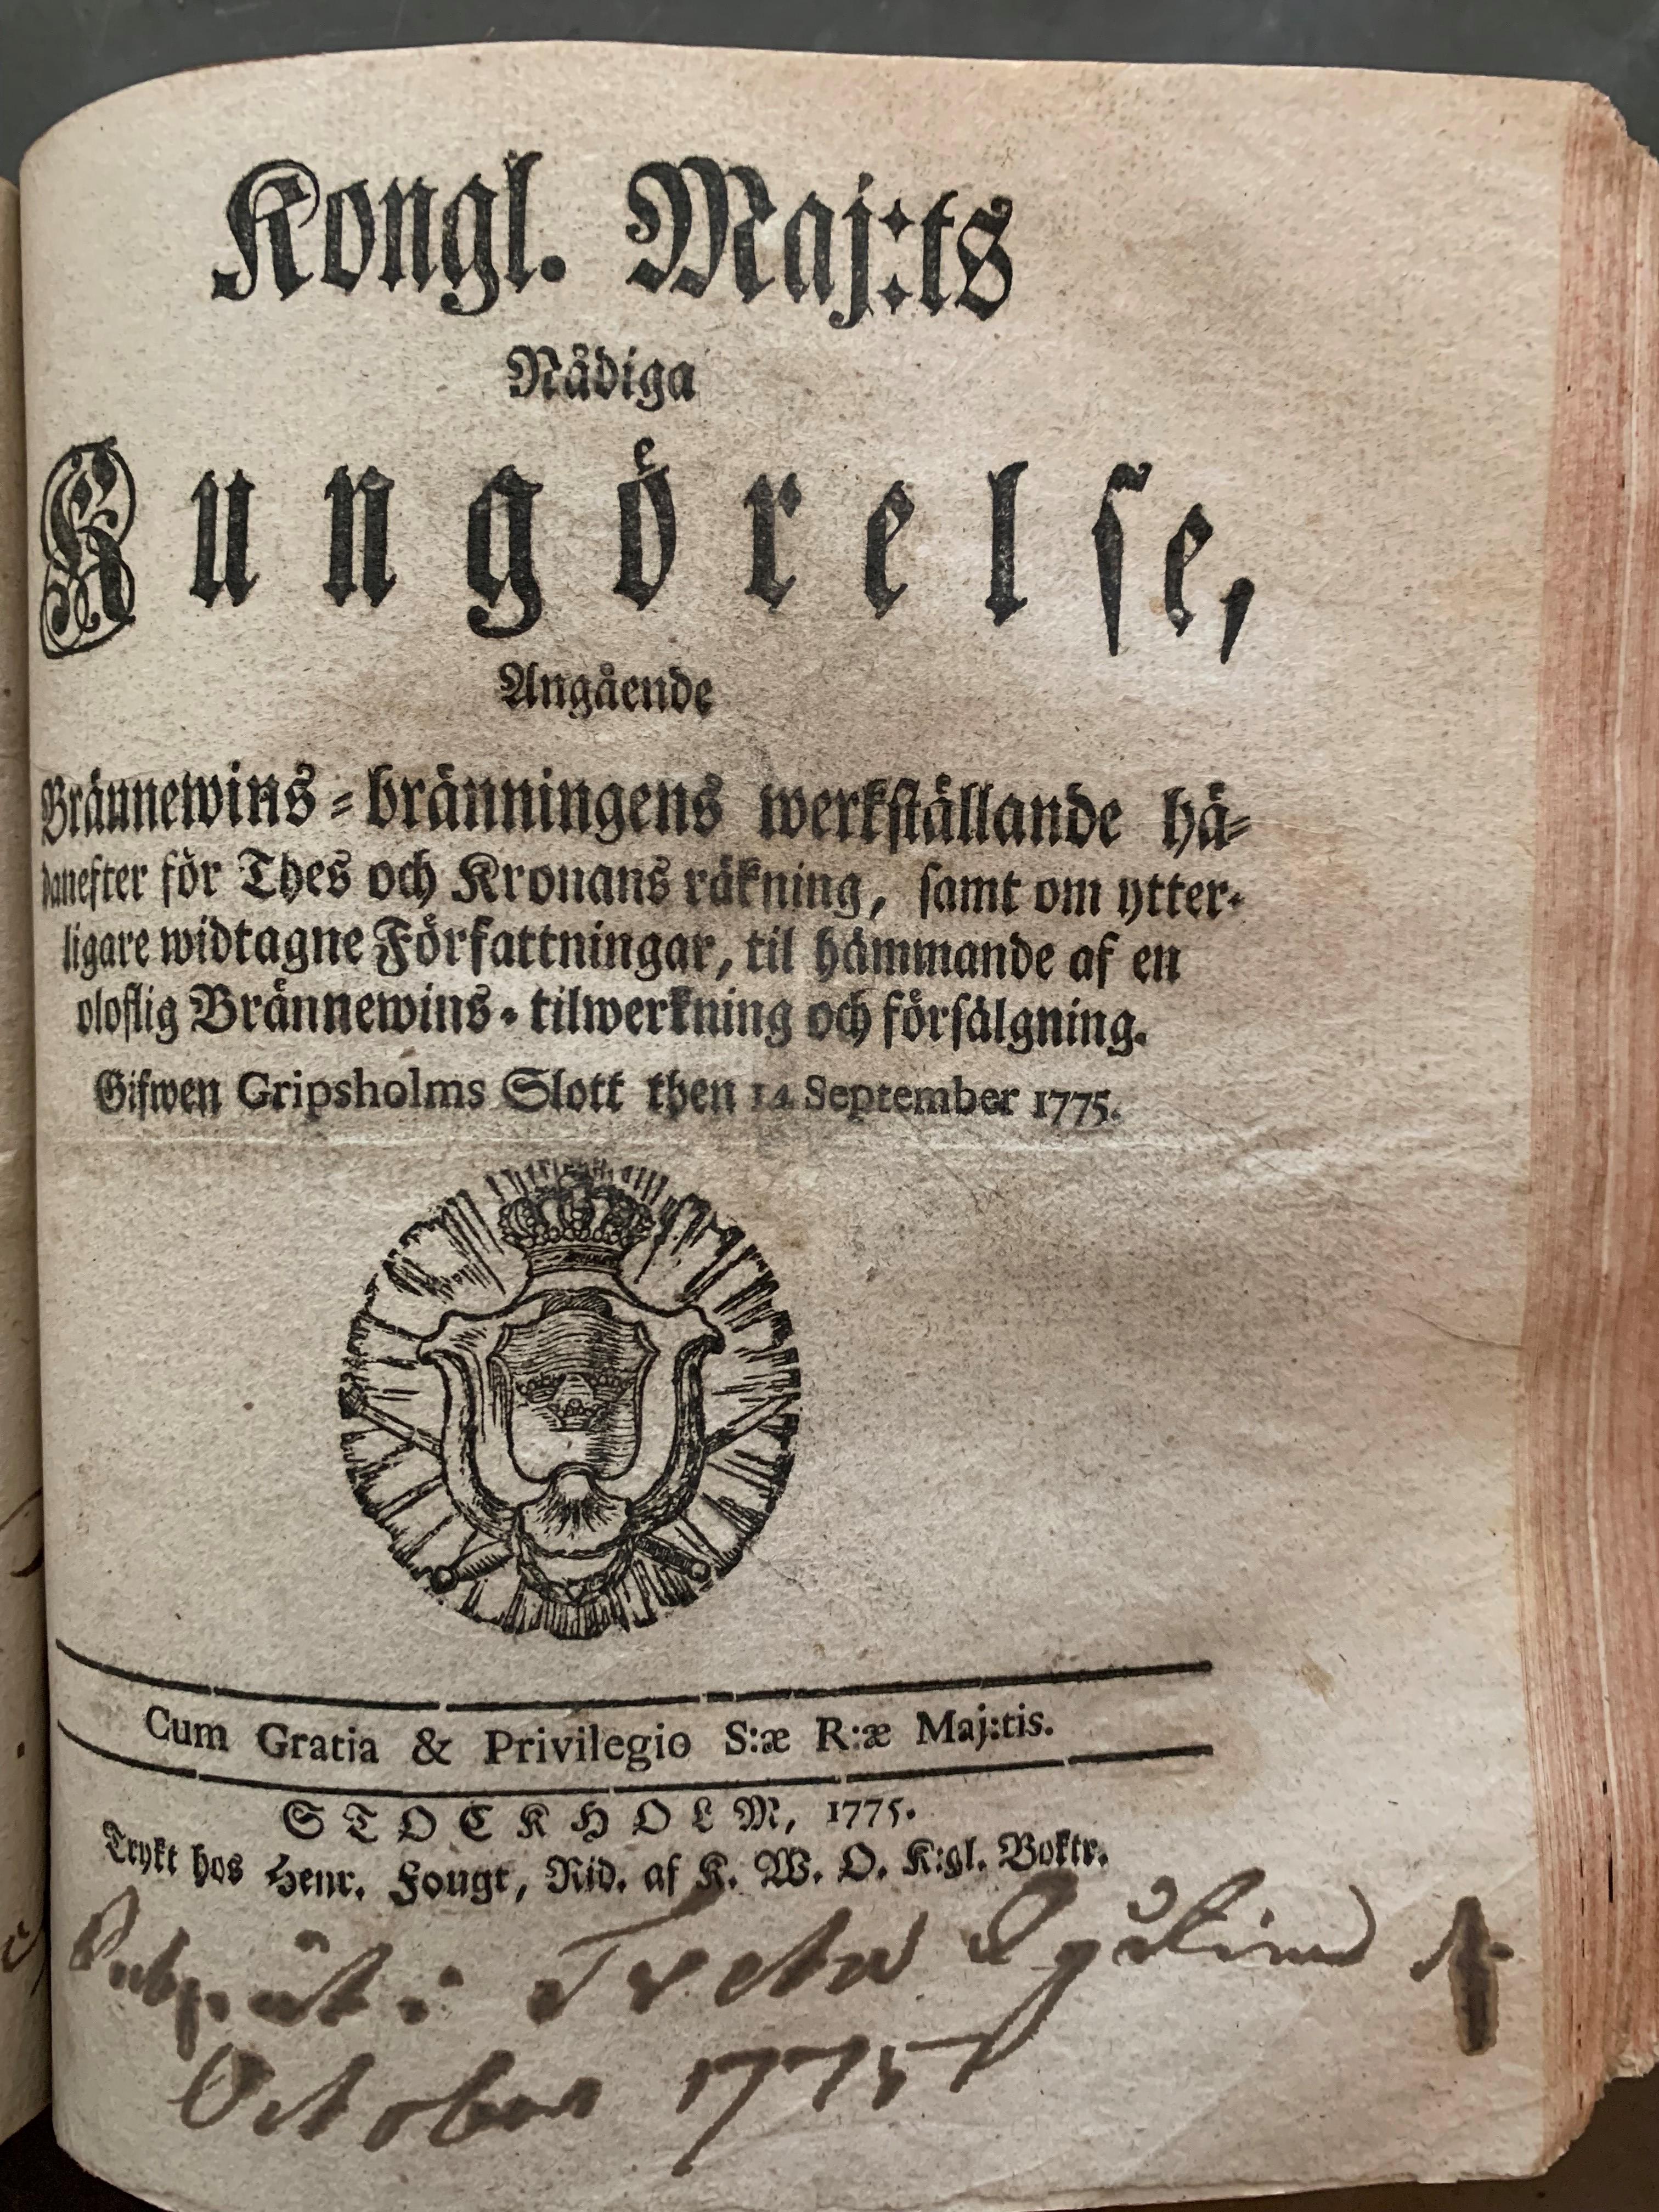 Titelsidan till kunglig förordning från 1775 angående statliga brännerier.